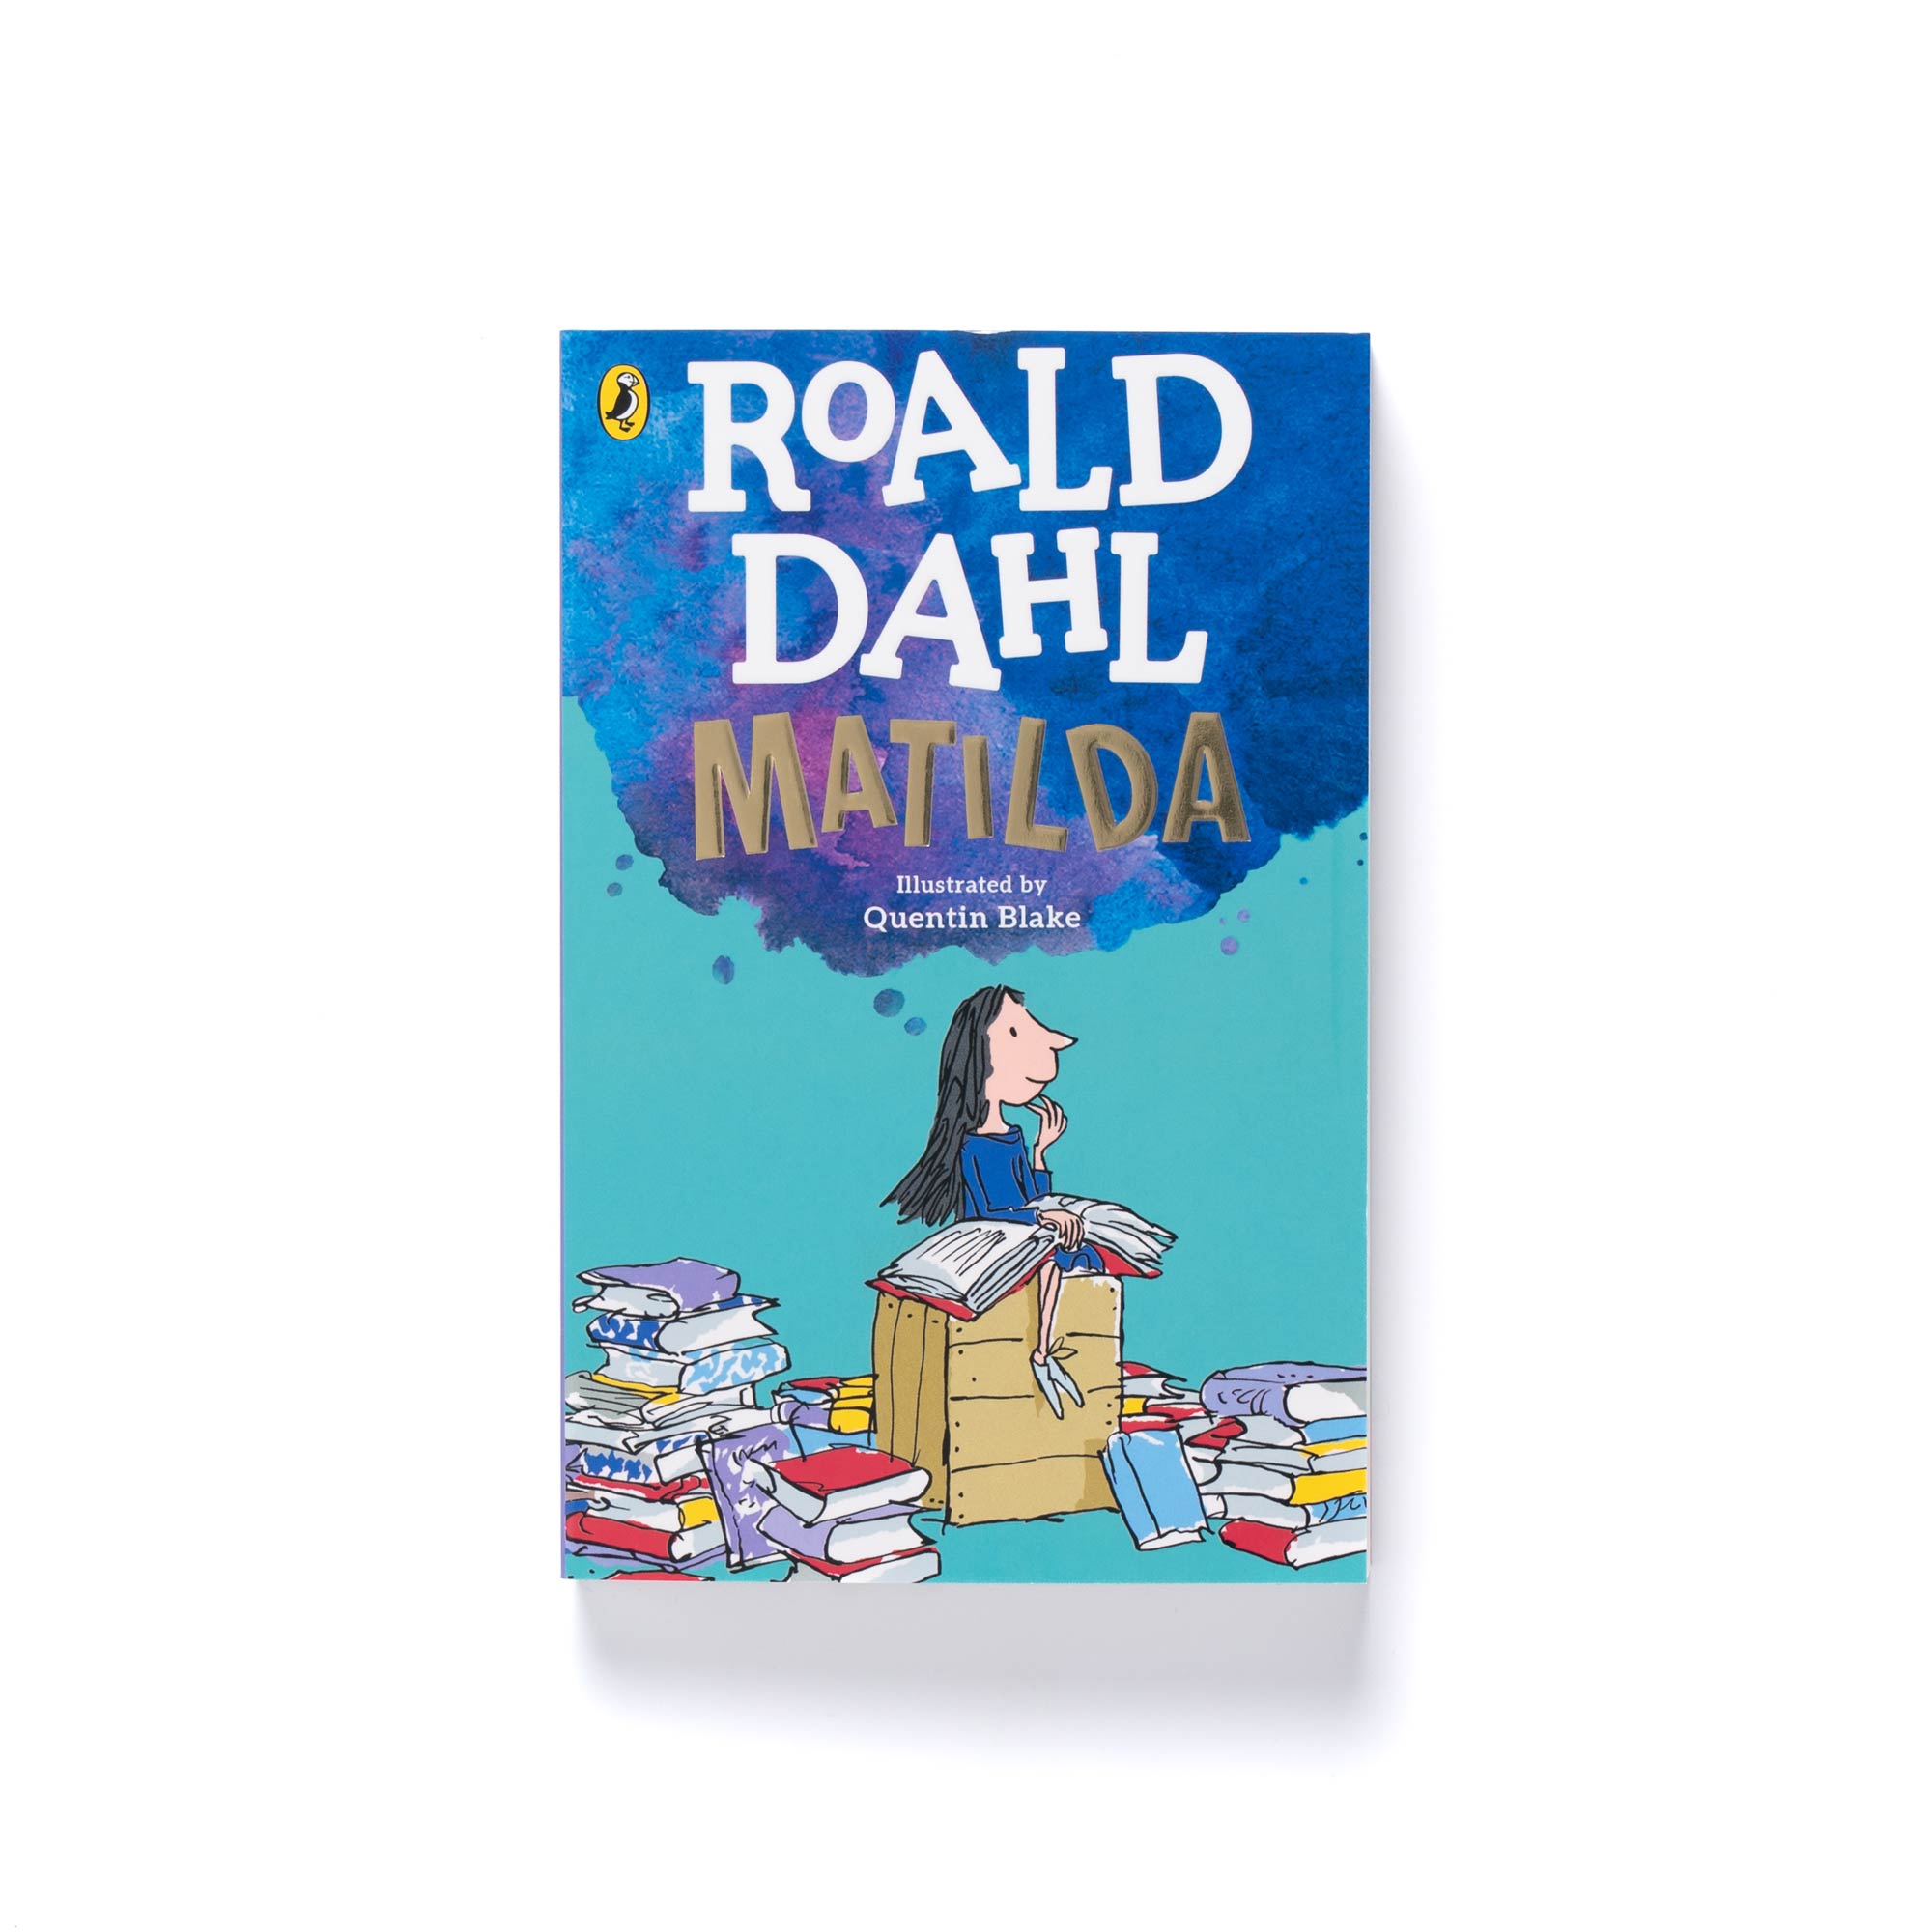 Roald Dahl's 'Matilda' Book